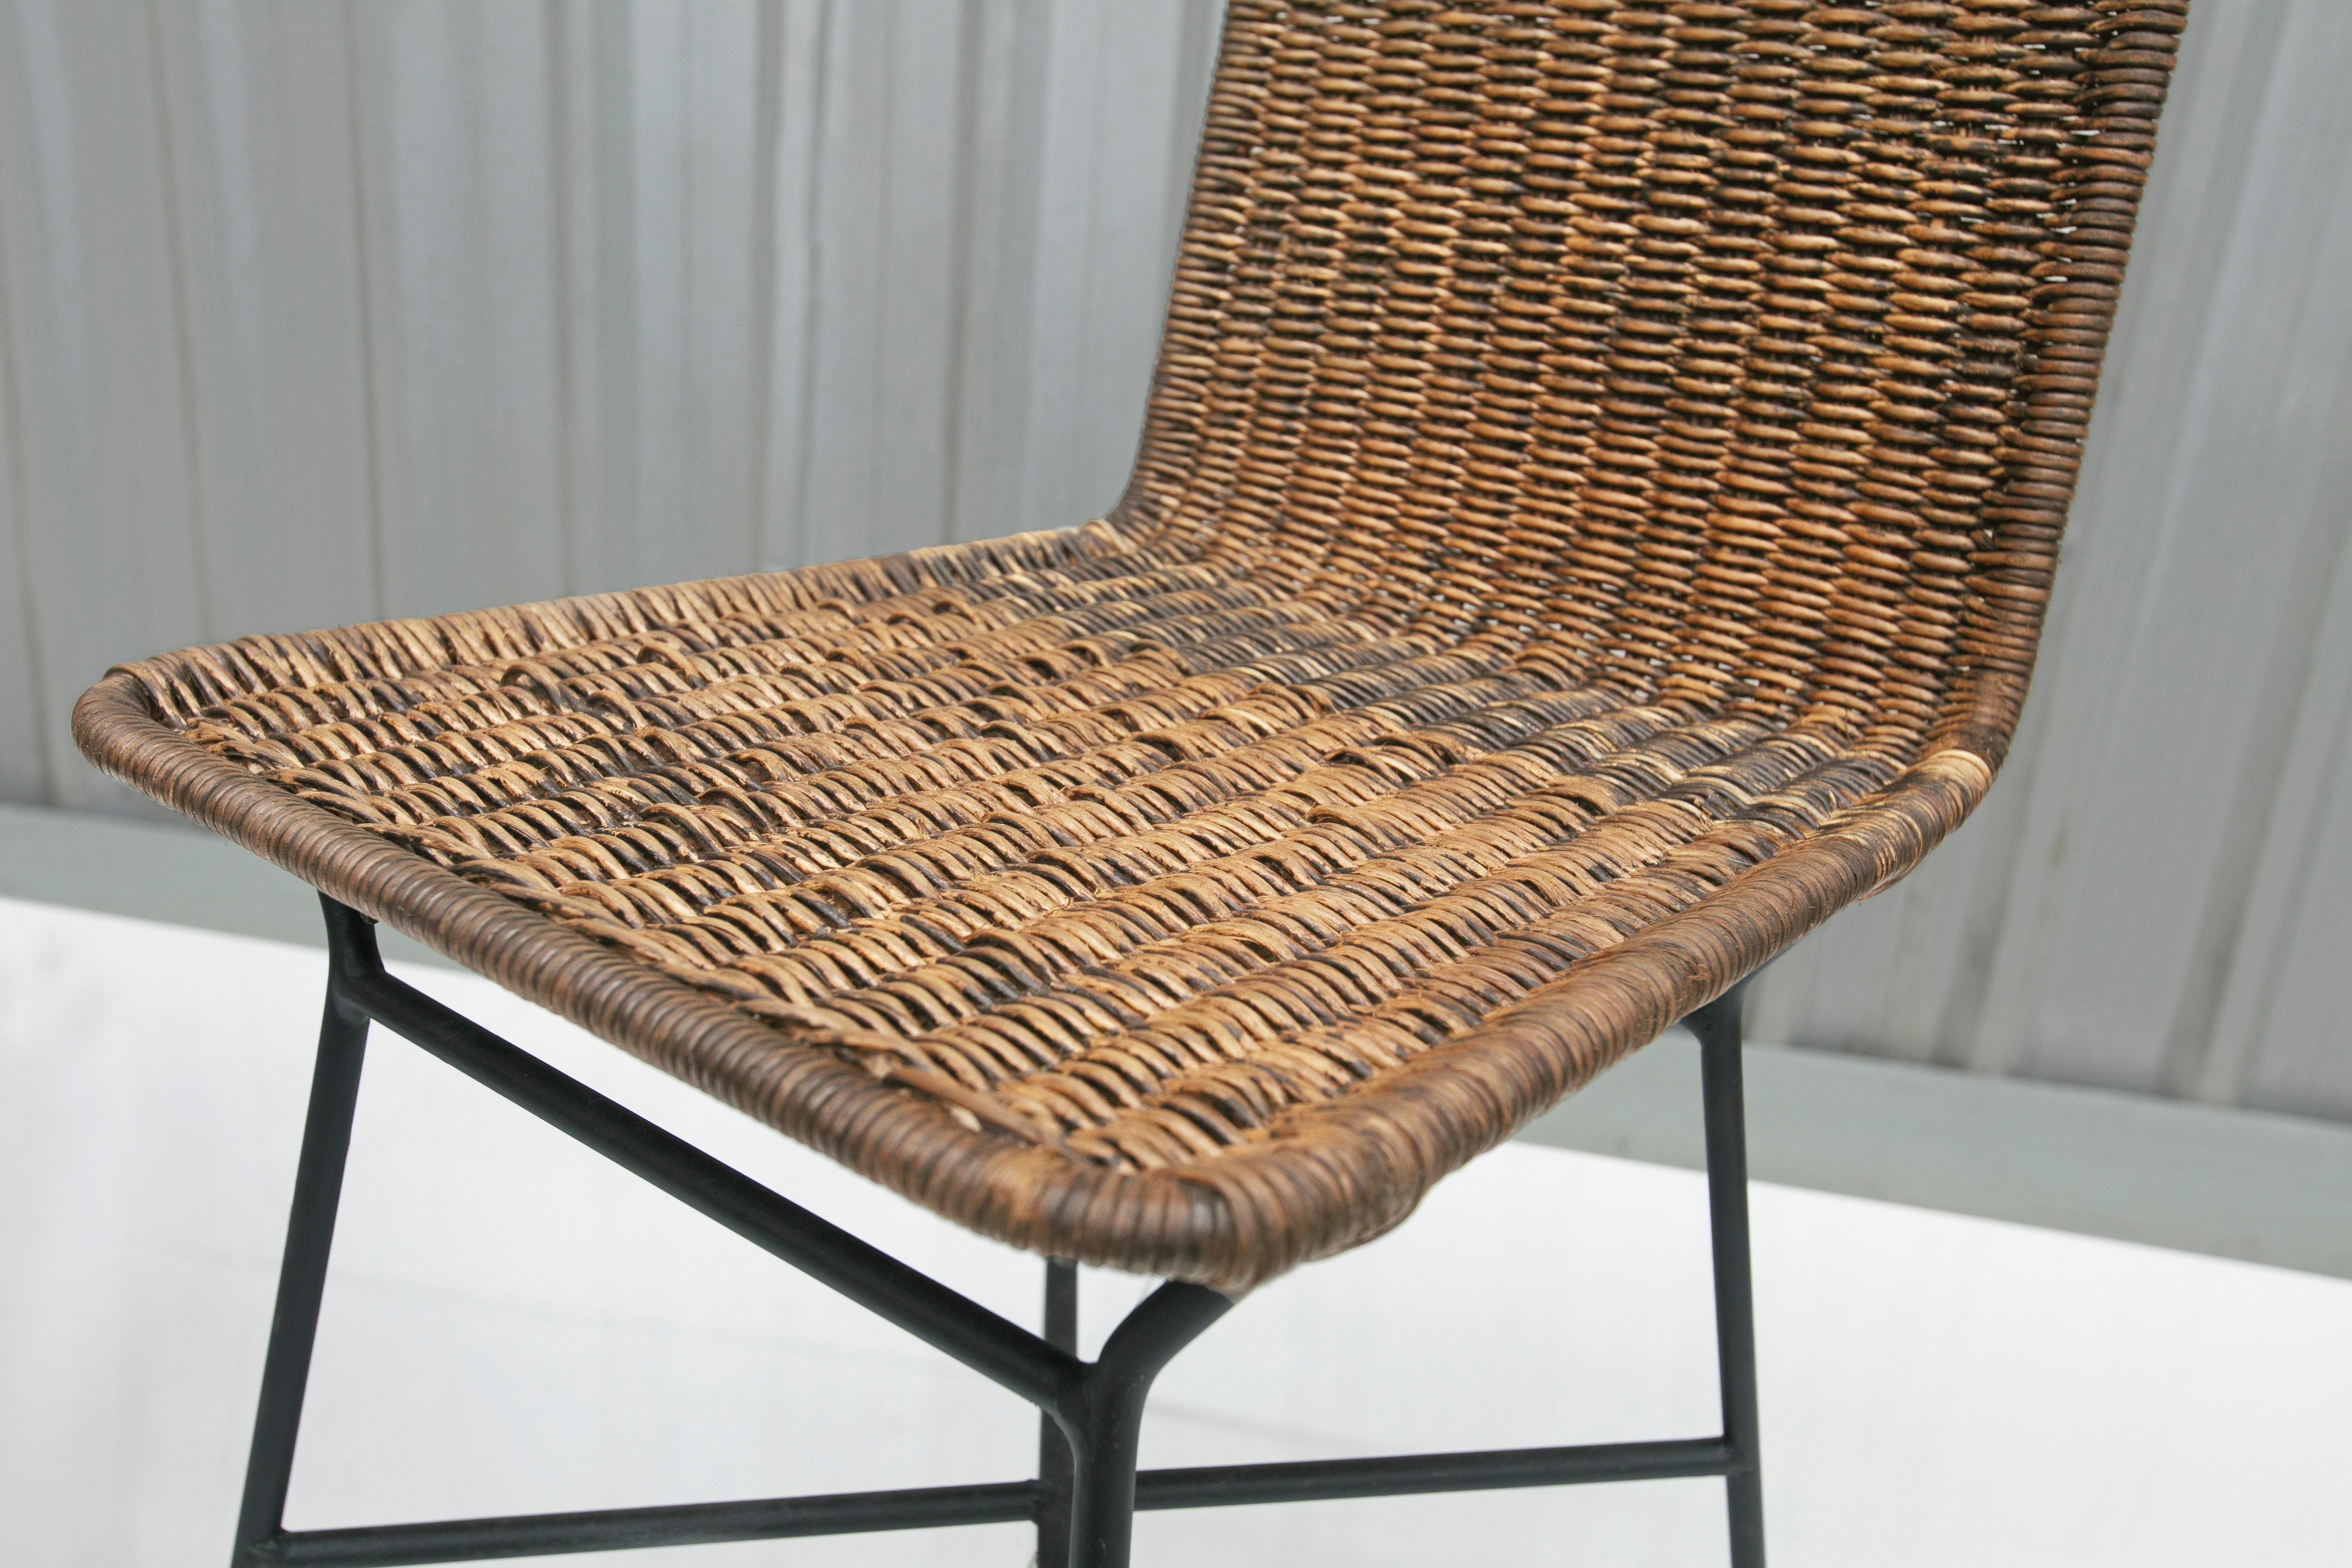 Brasilianische moderne Stühle aus Rohrgeflecht und Metall von Carlo Hauner, 1950er Jahre, Brasilien (Gehstock) im Angebot